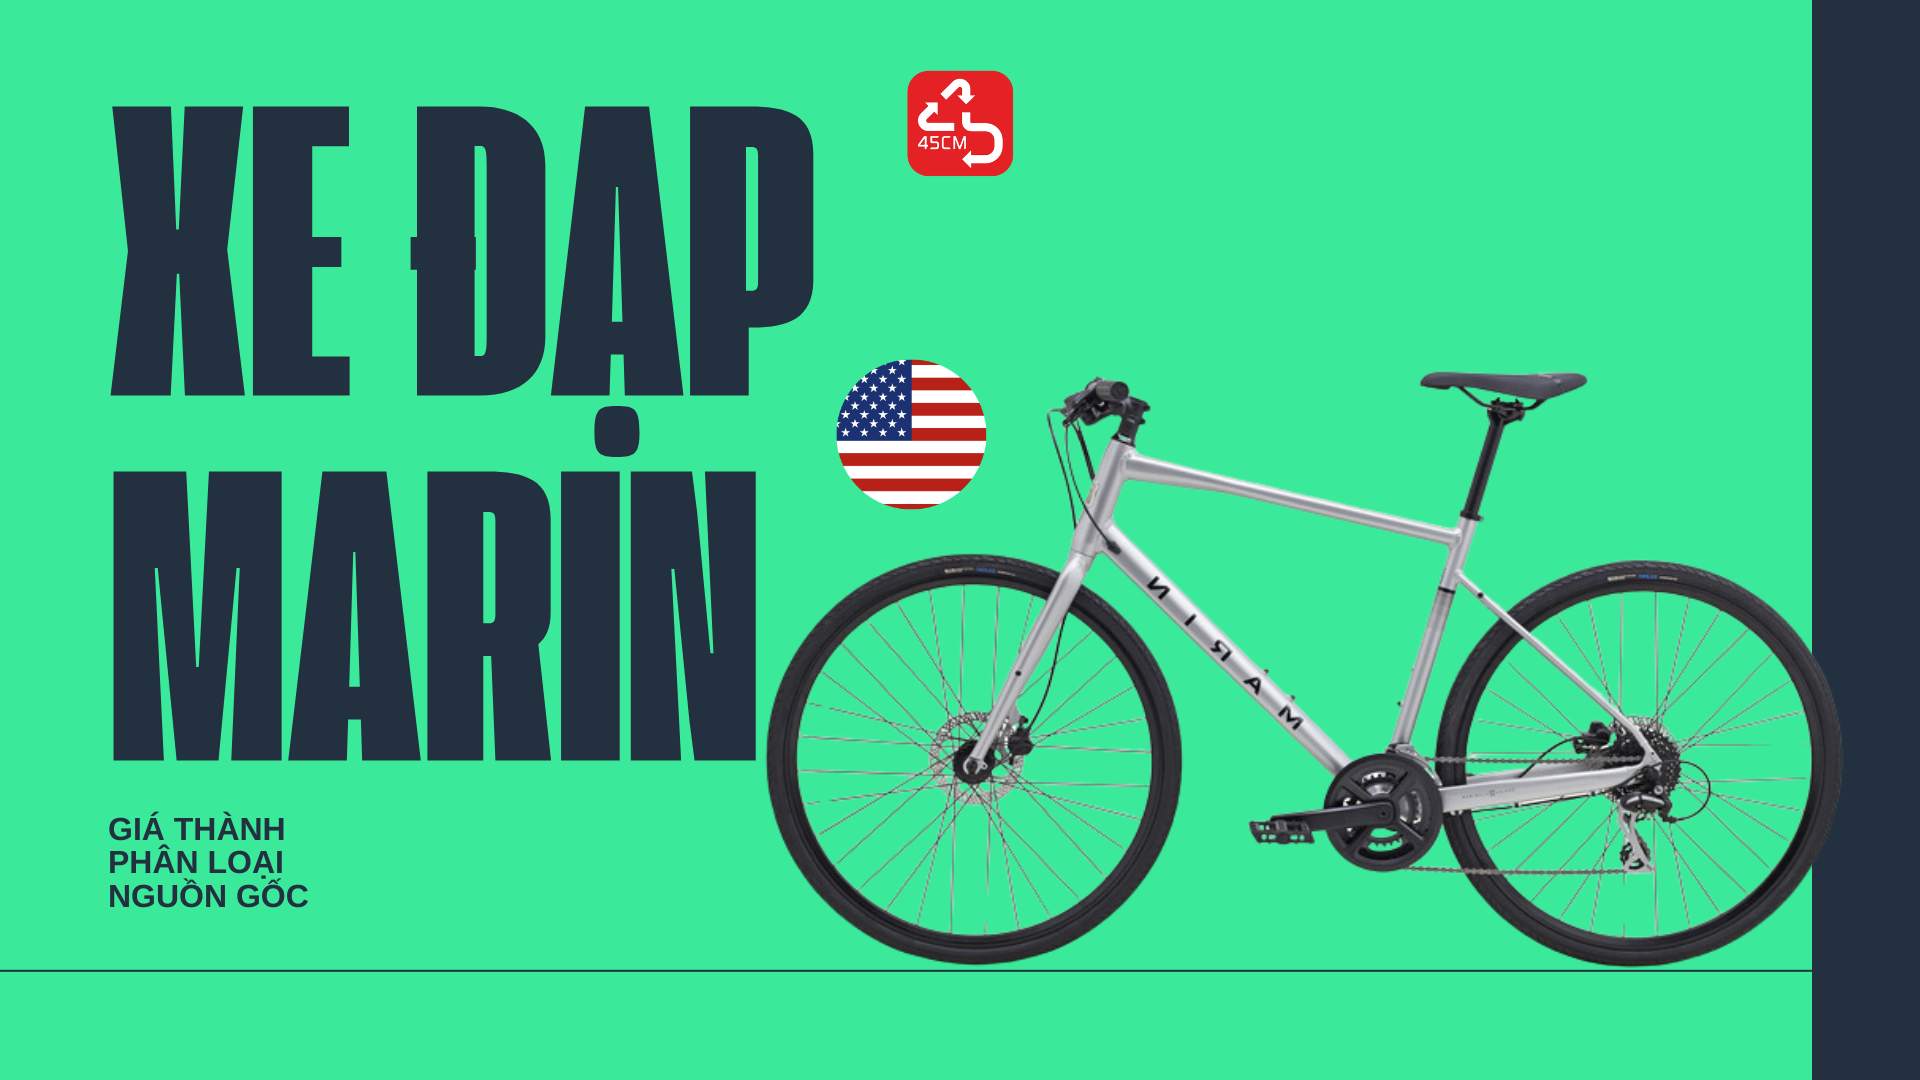 Xe đạp Marin: Dòng xe đạp chất lượng cao đến từ California